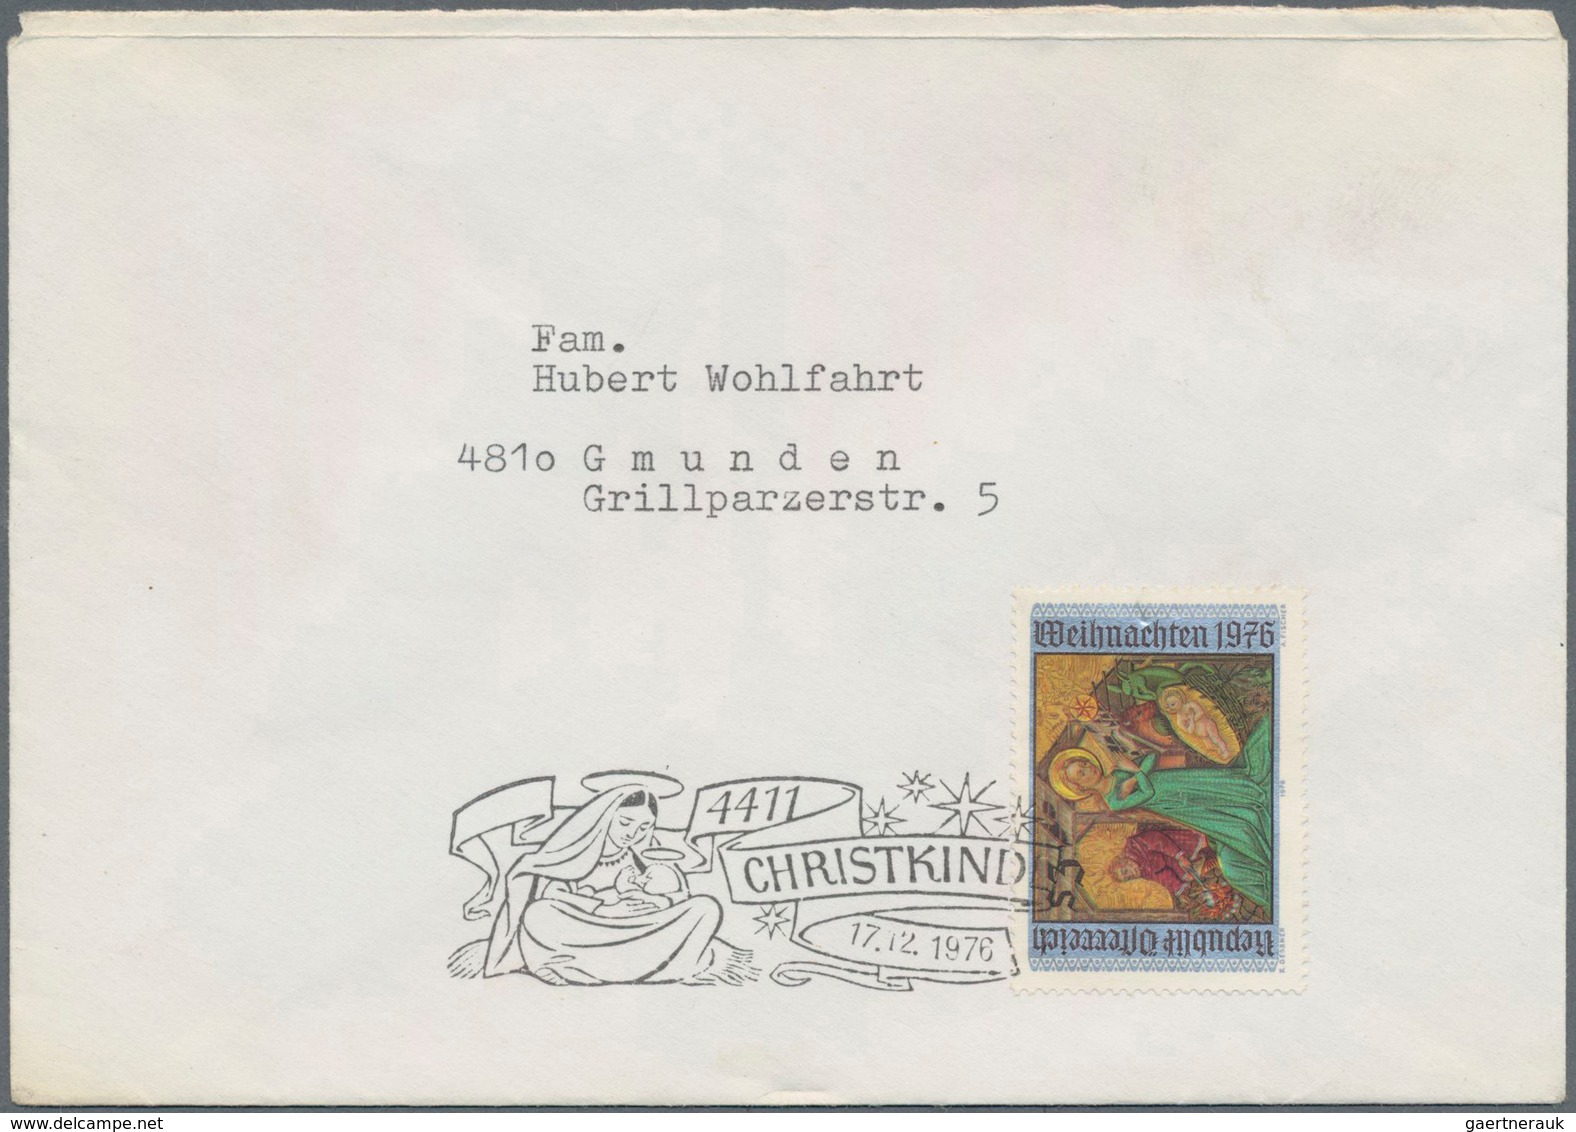 Österreich: 1950/1990. Hochwertige Belege-Sammlung CHRISTKINDL in Album. Dabei Brief vom 22.12.50, Z